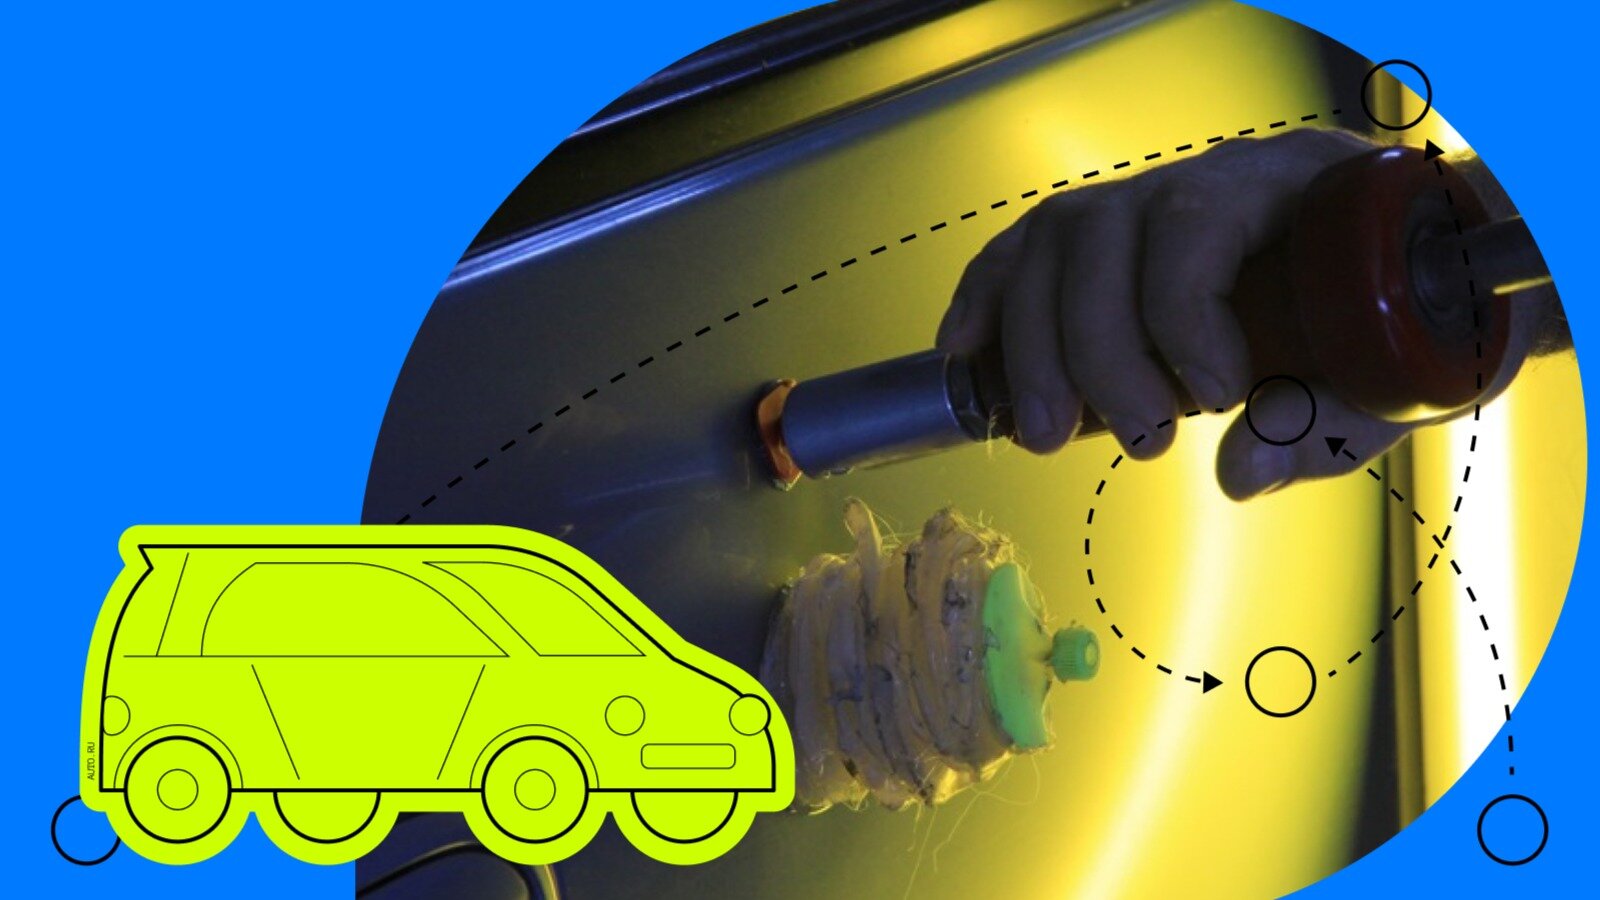 Инструмент – присоска для самостоятельного удаления вытягивания вмятин на автомобиле